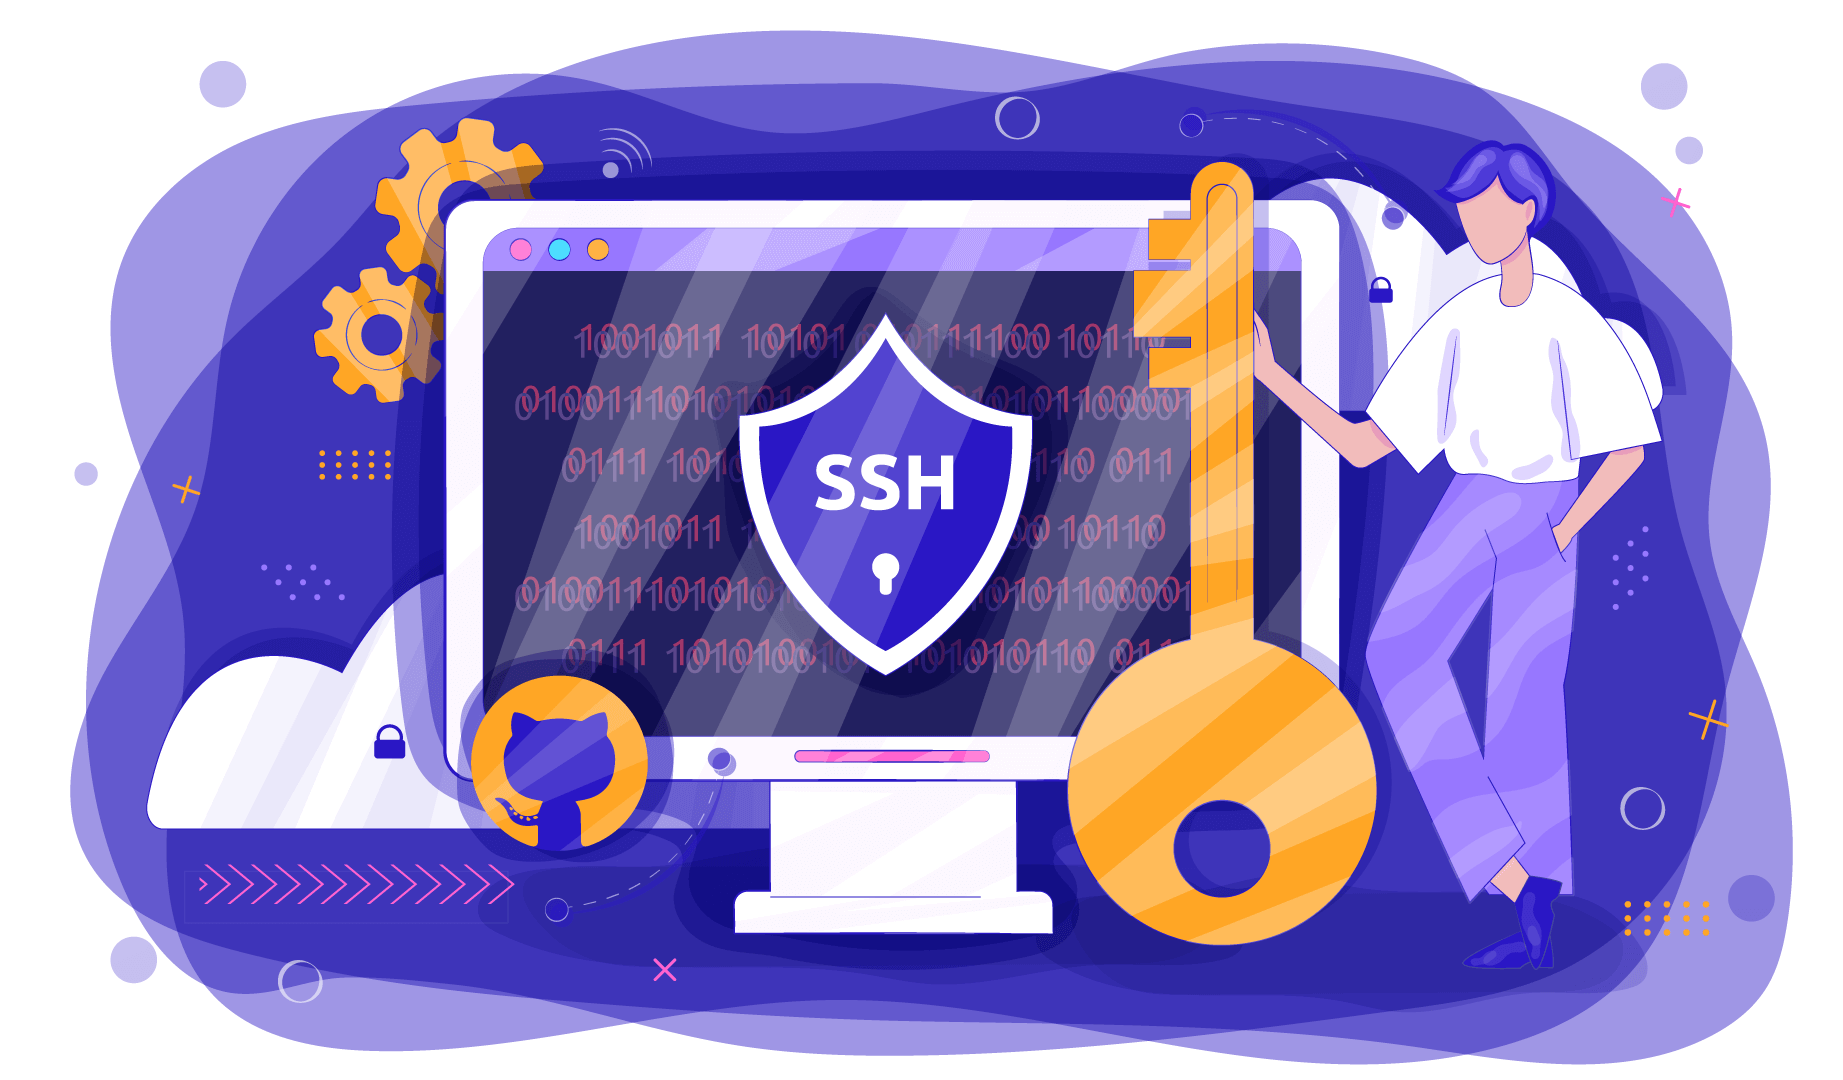 Что представляет собой ssh ключ и для чего он необходим для GitHub?